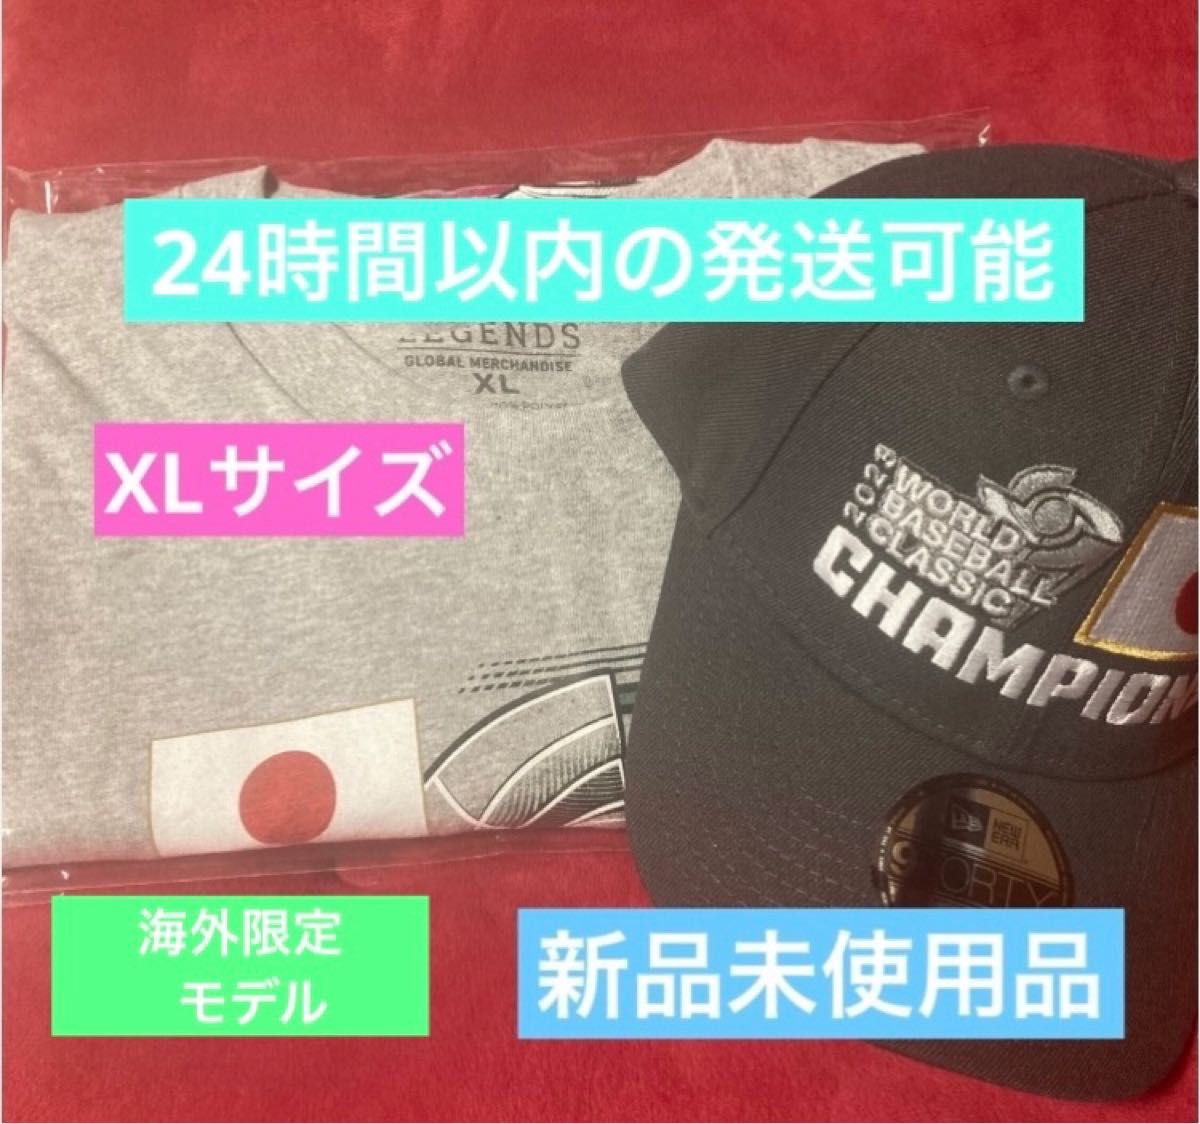 侍ジャパン WBC 優勝記念Tシャツ キャップ ニューエラ グレー 海外限定モデル XL 大谷翔平 Tシャツ